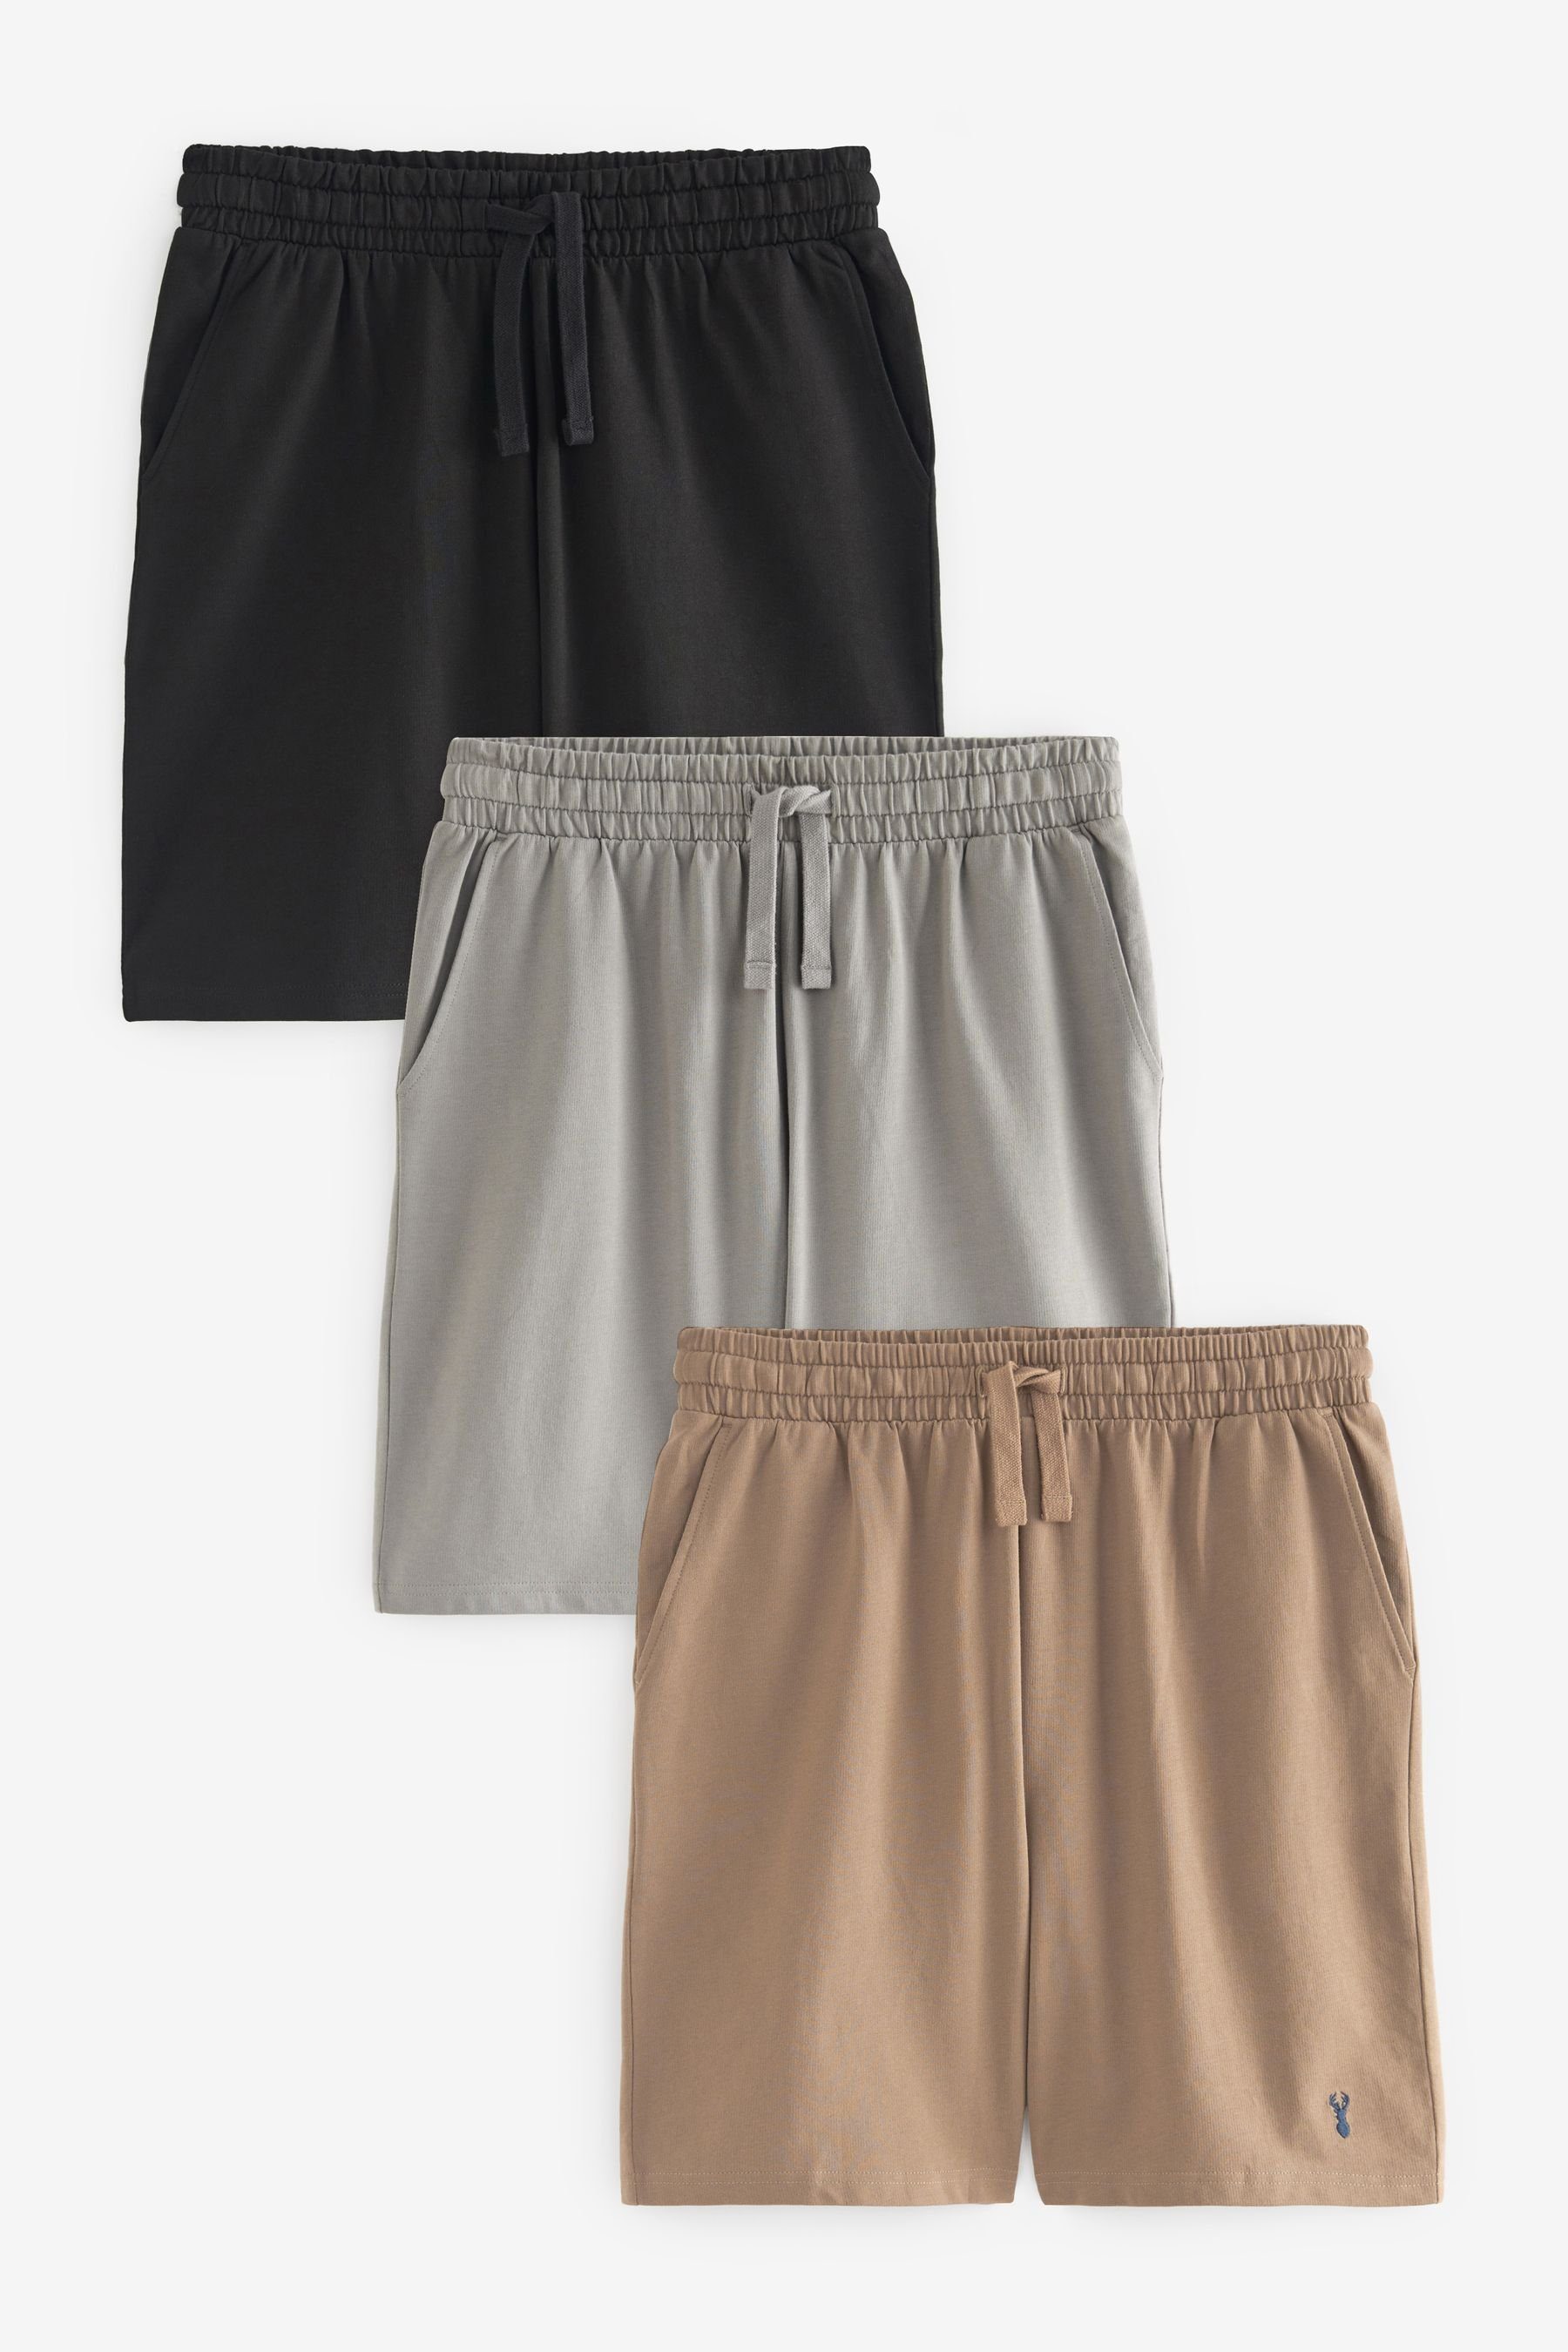 Next Schlafshorts Leichte Shorts, Black/Grey/Tan Brown (3-tlg) 3er-Pack